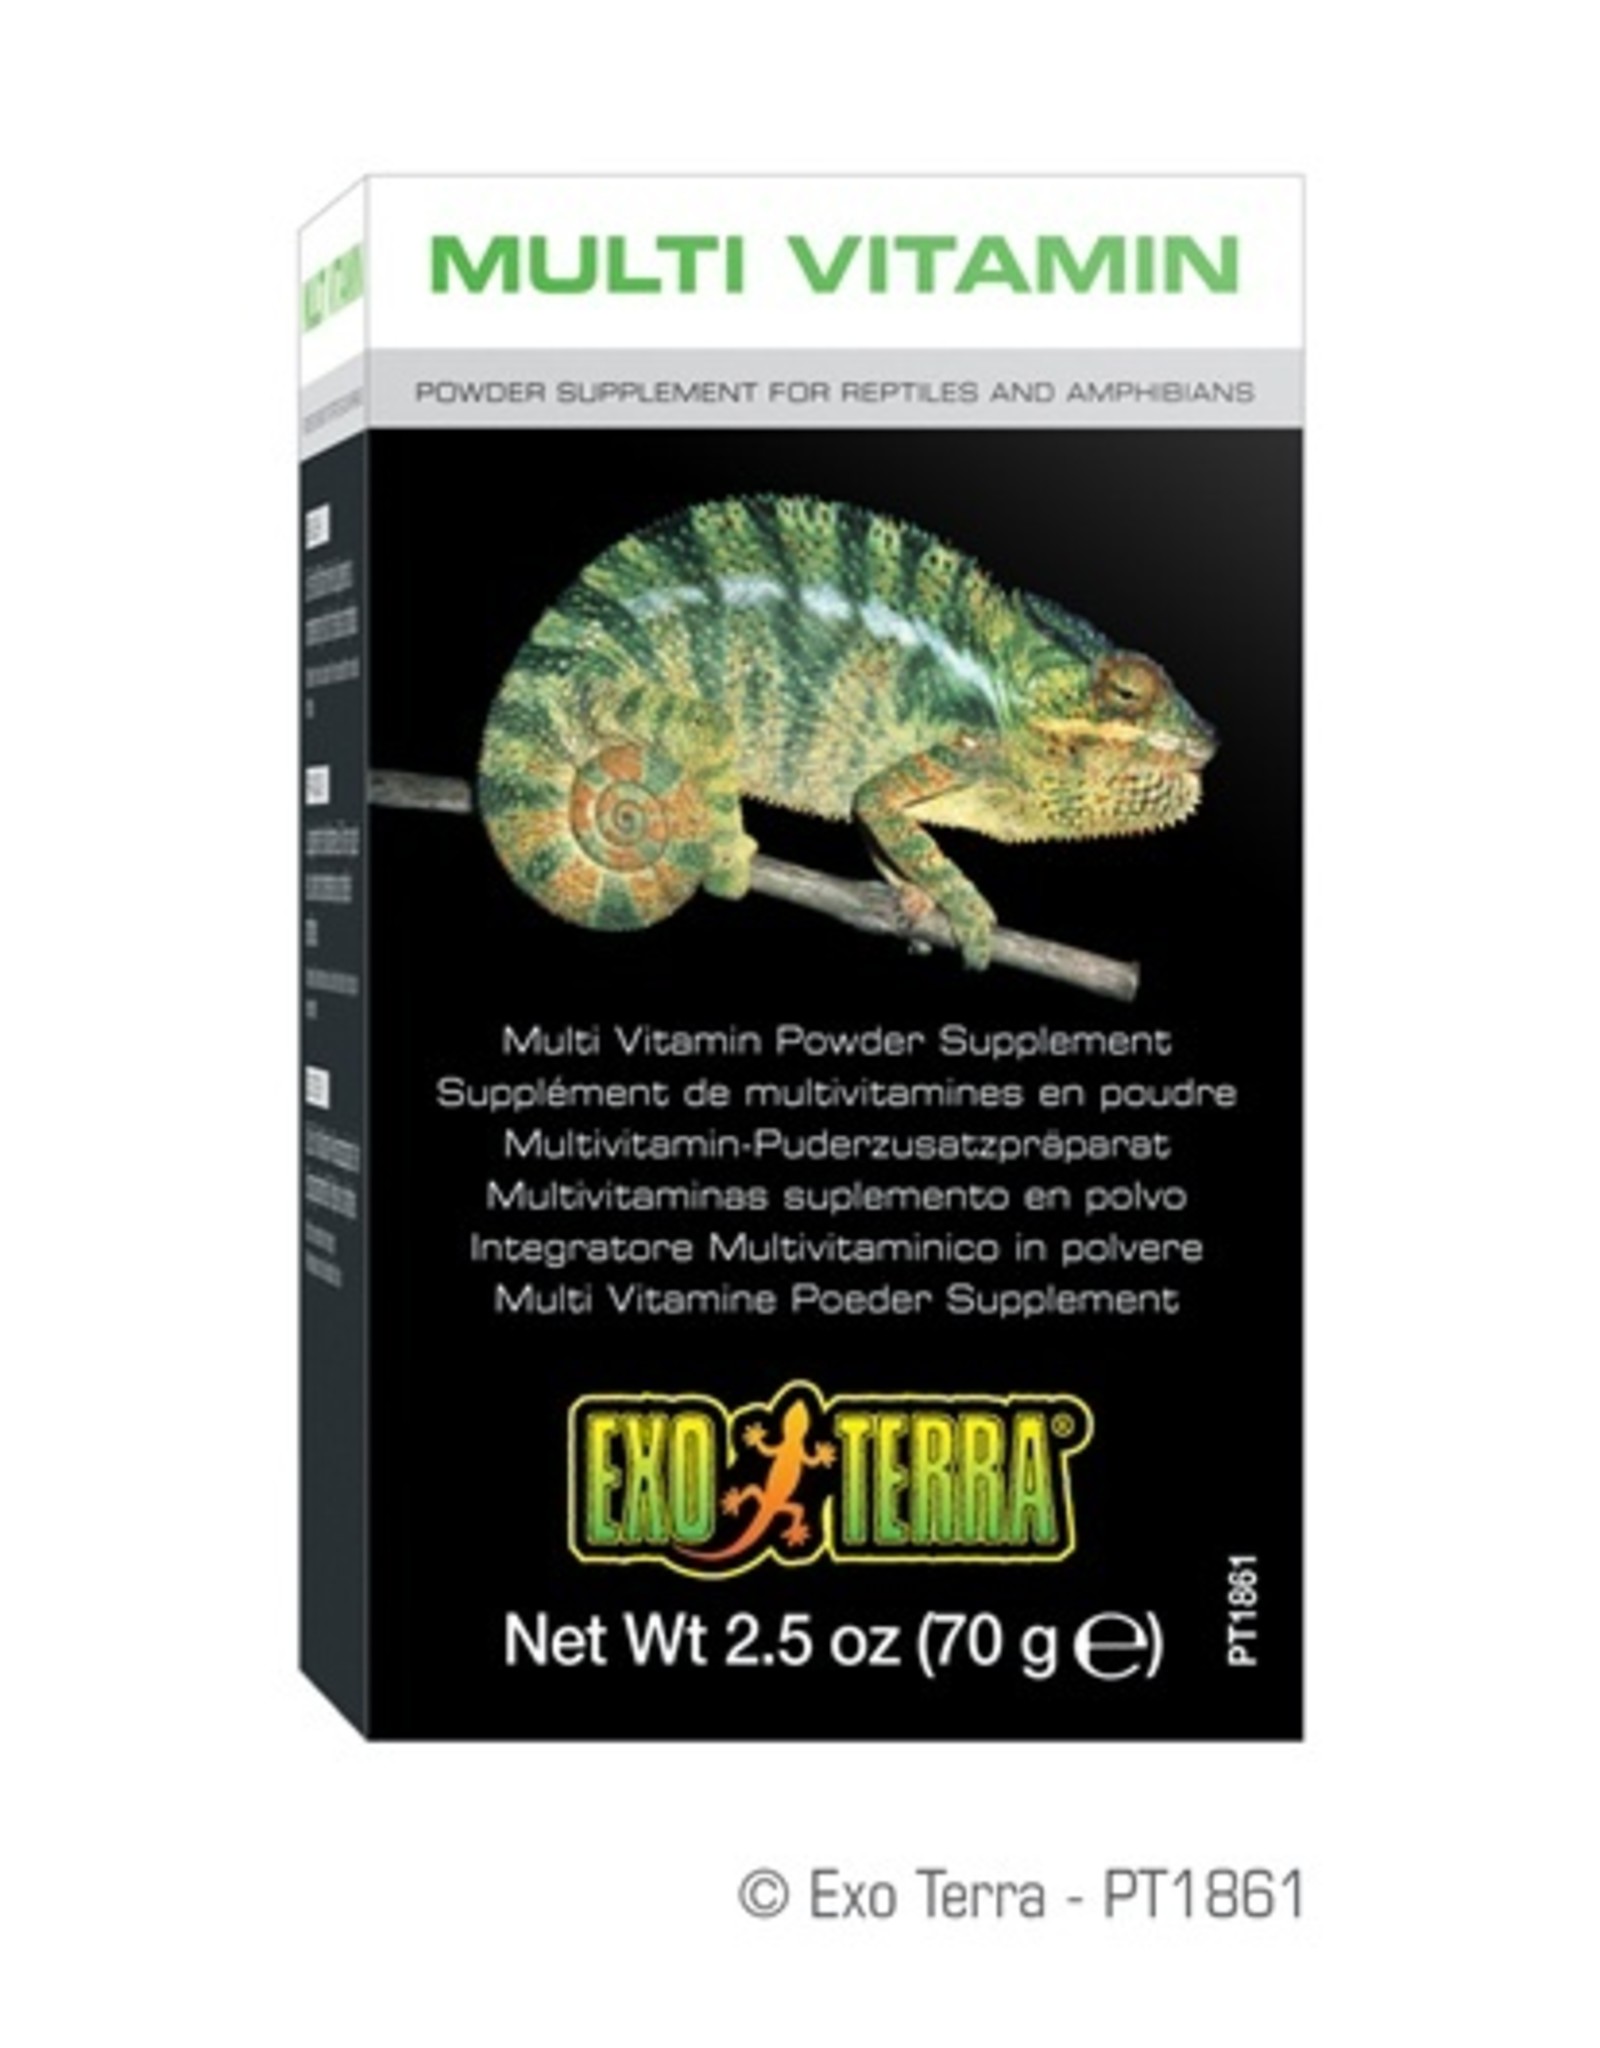 Exo Terra EXO TERRA Reptile Multi Vitamin Supplement